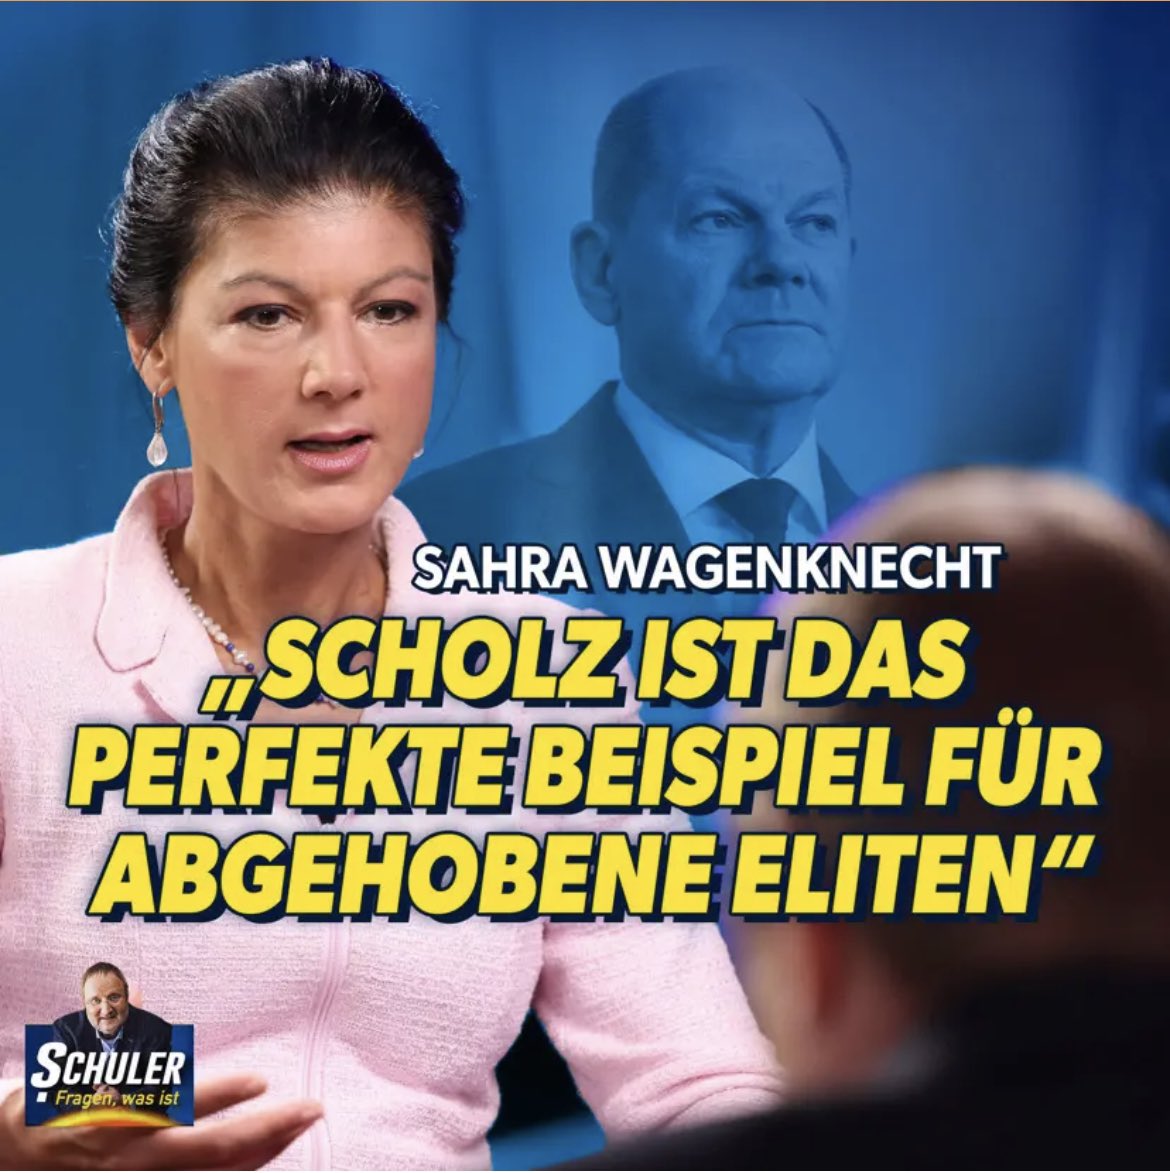 Die wirtschaftlichen Kennziffern zeigen alle in den Keller – nur einer kann und will es nicht sehen: Olaf Scholz (SPD). Sahra #Wagenknecht sieht darin ein perfektes Beispiel für eine „abgehobene Eliten“. #Schulerfragenwasist #NIUS nius.de/politik/sahra-…